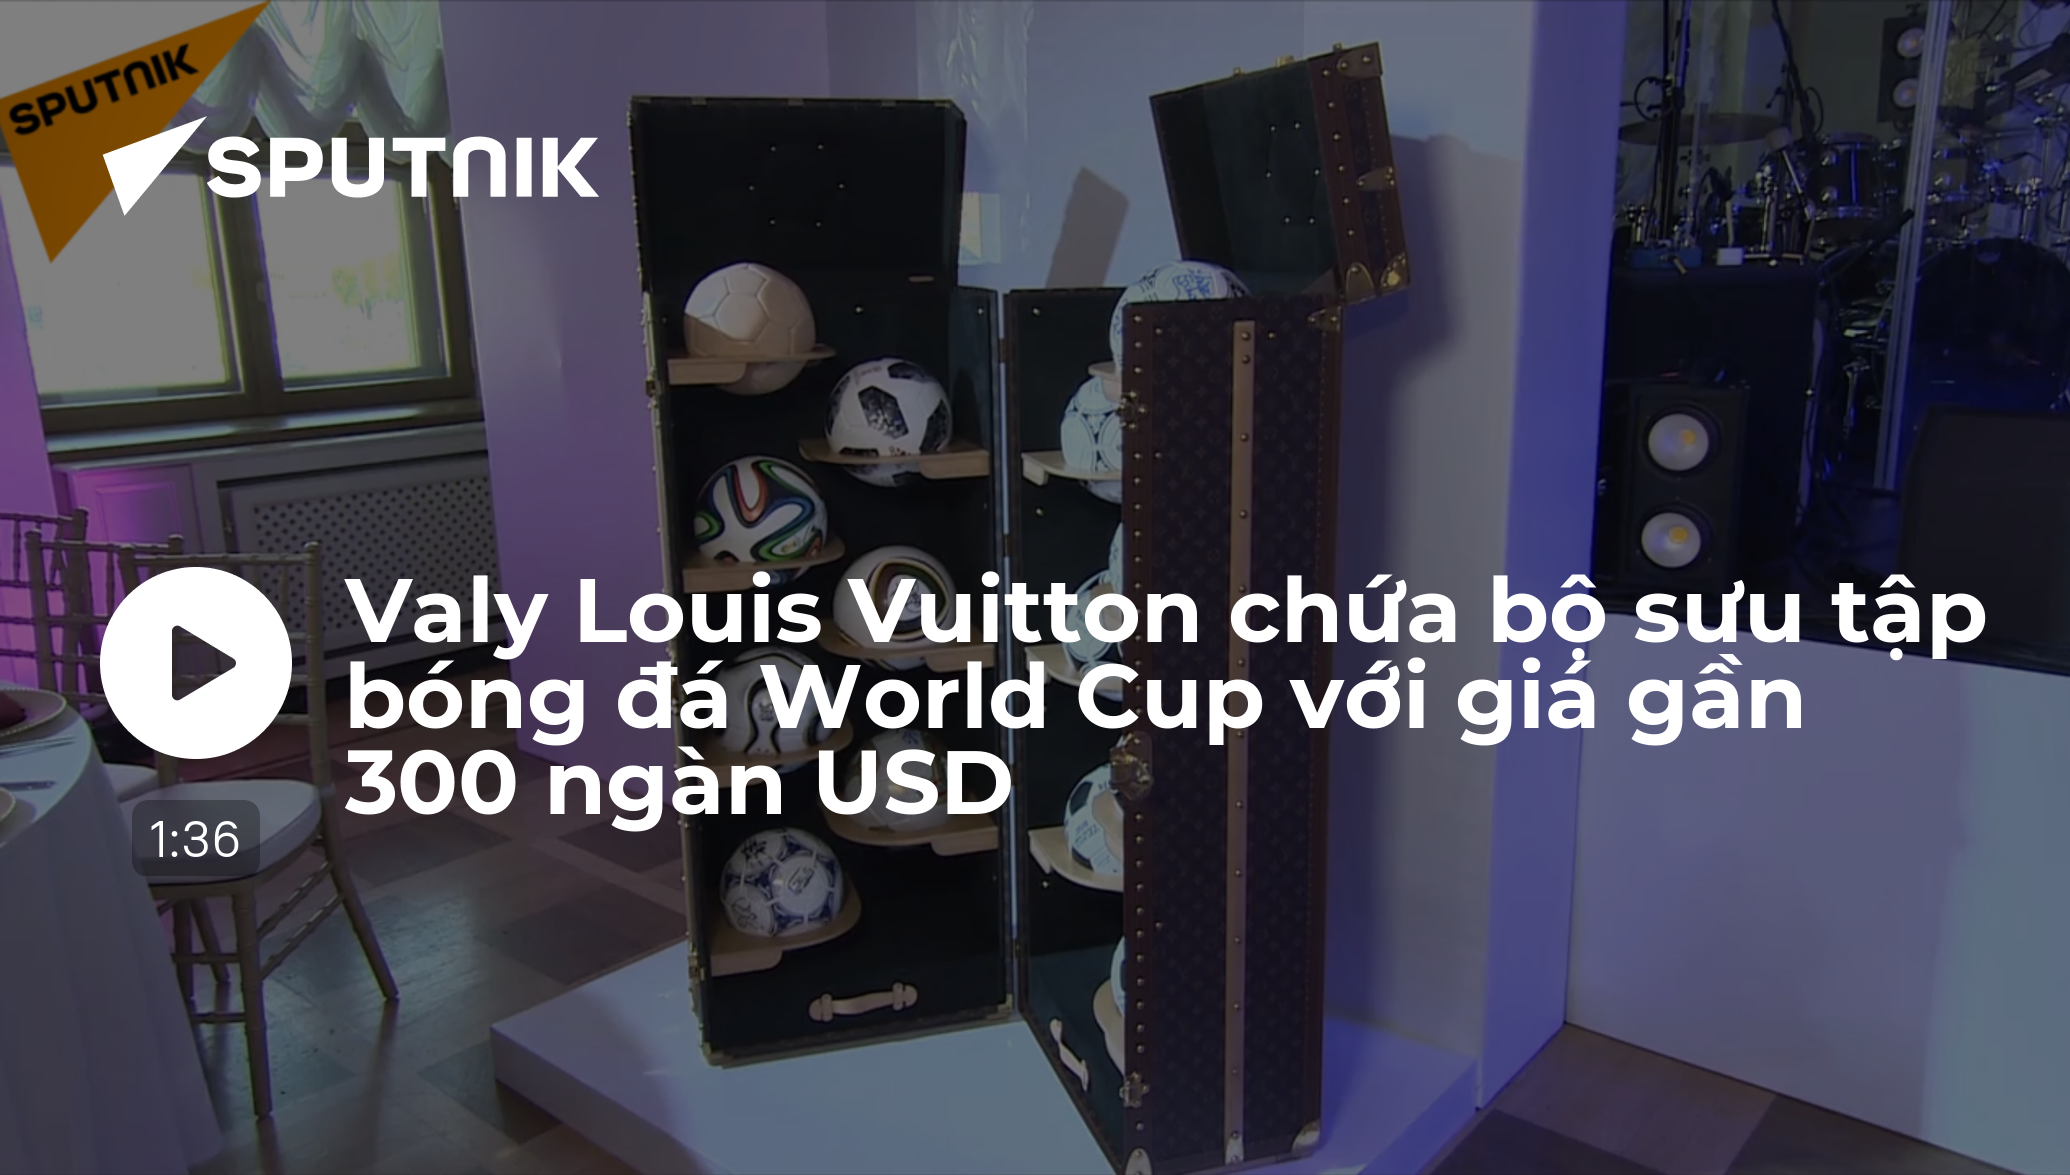 Messi đang lật lại thế trận trong bức ảnh chơi cờ lịch sử của Louis Vuitton